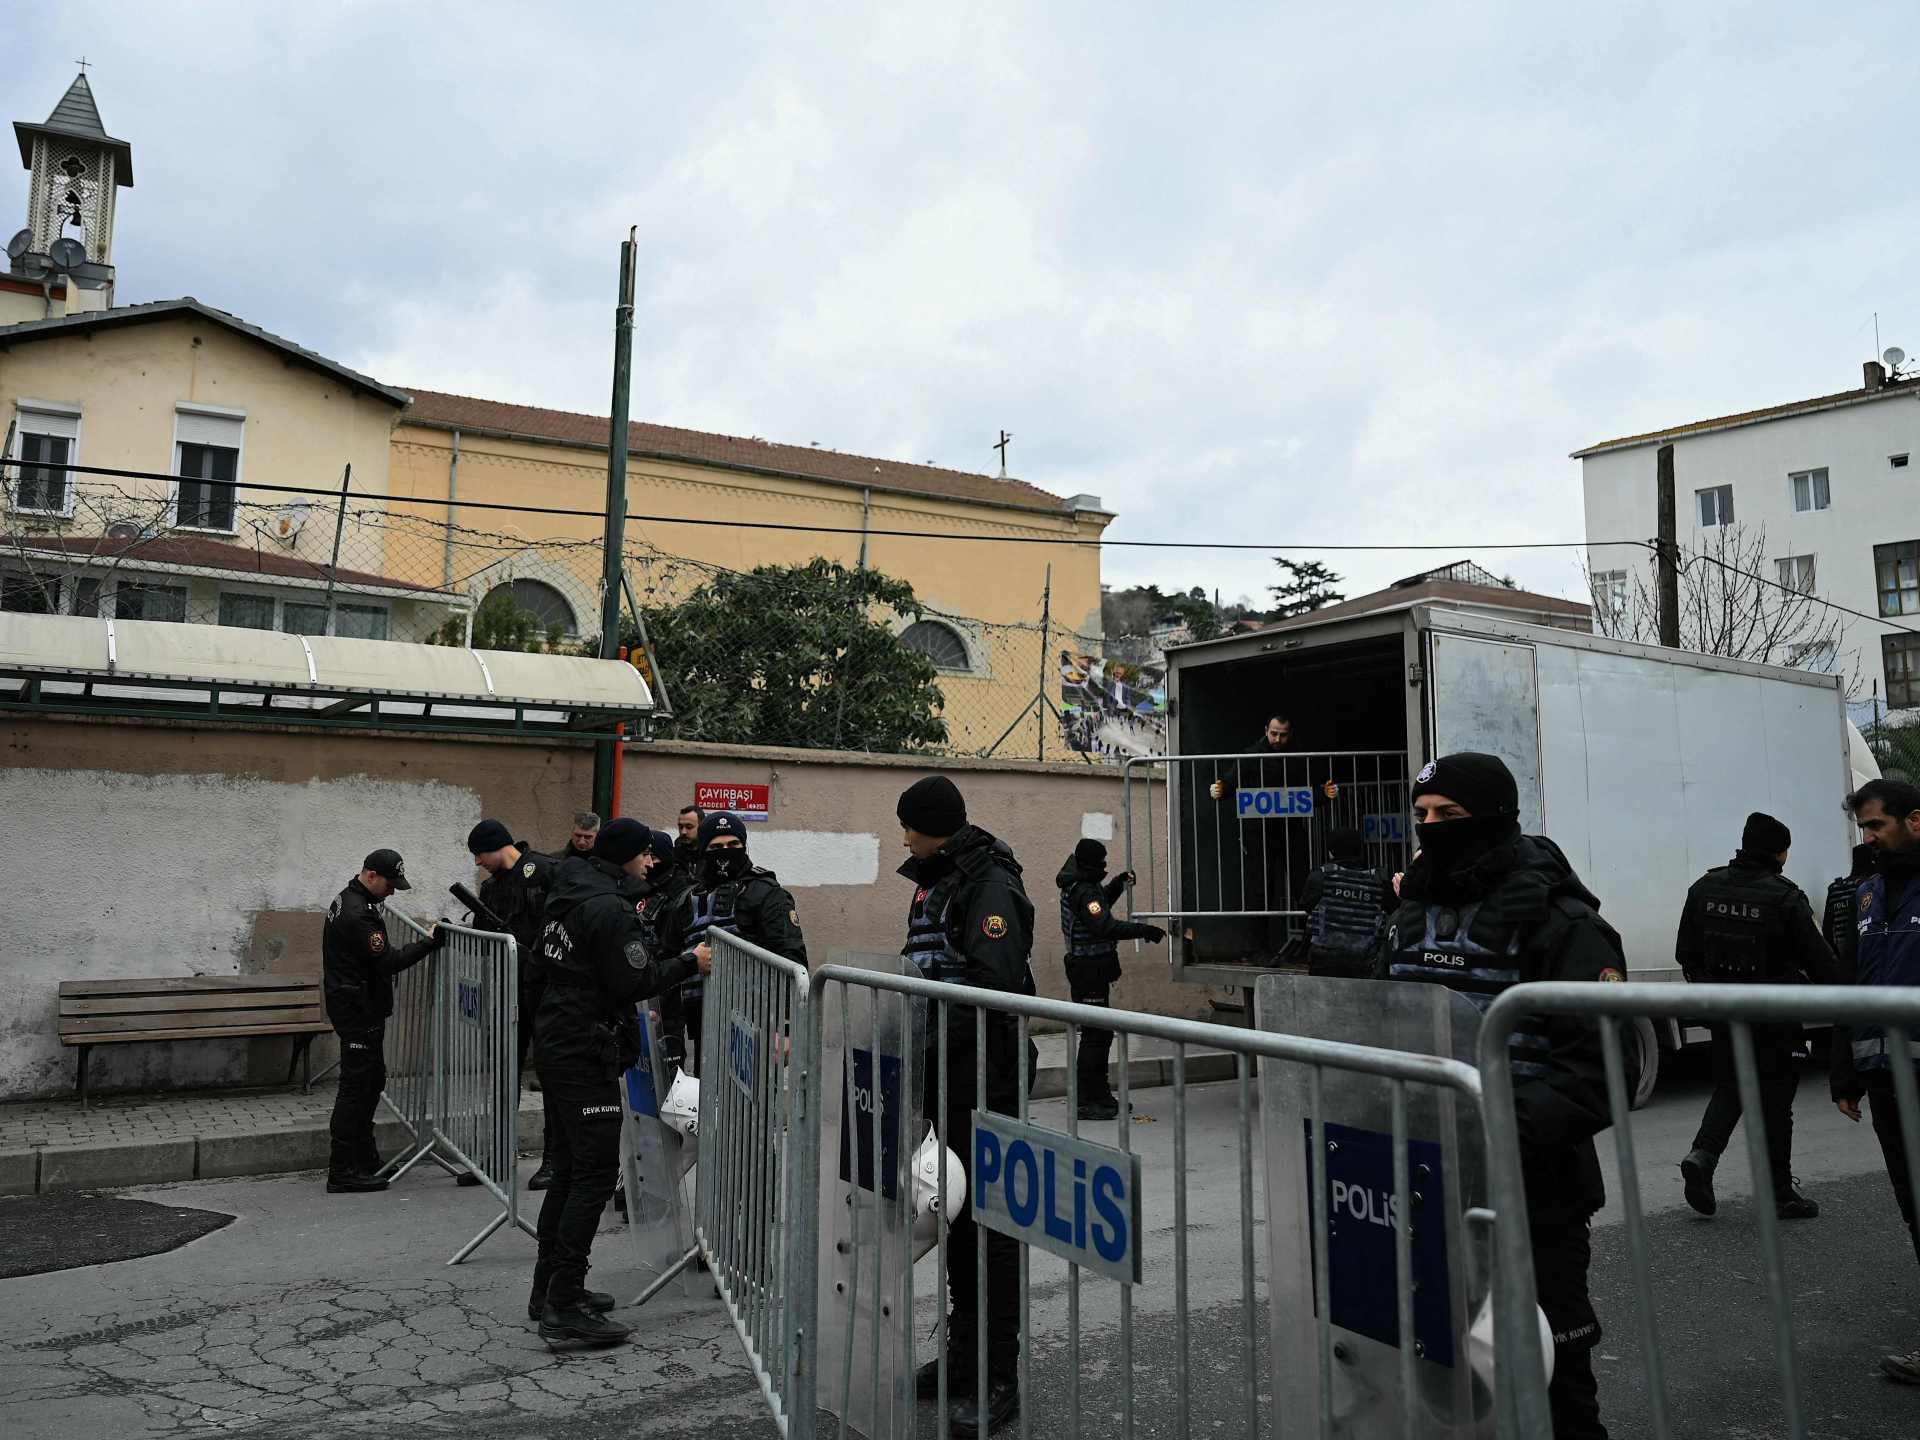 تركيا تعتقل منفذي الهجوم على كنيسة في إسطنبول | أخبار – البوكس نيوز